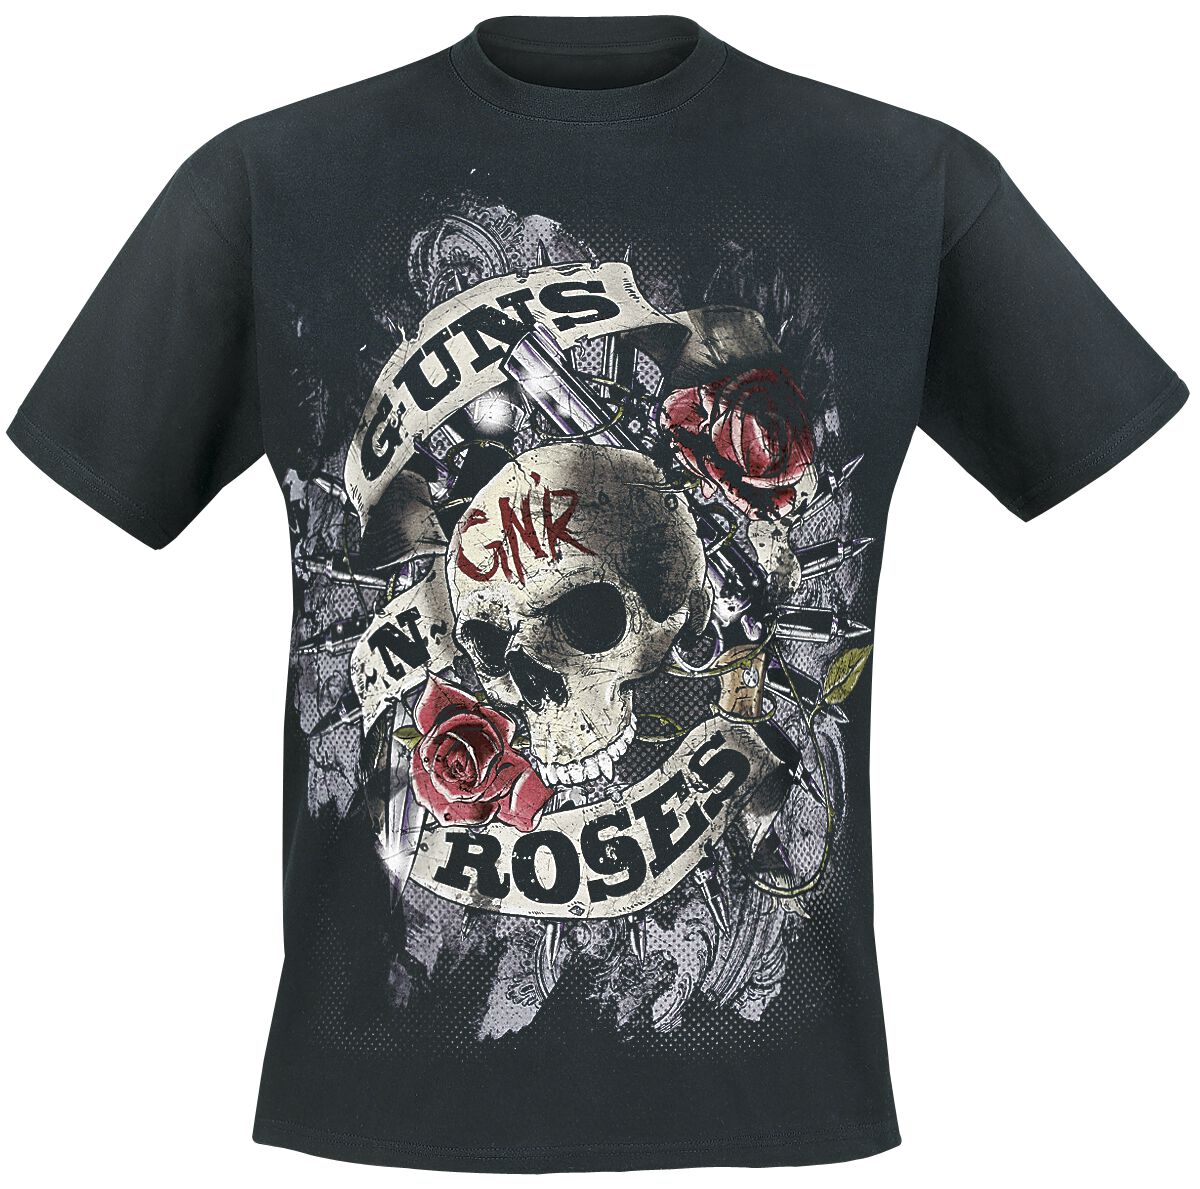 Guns N` Roses T-Shirt - Firepower - S bis 5XL - für Männer - Größe XXL - schwarz  - Lizenziertes Merchandise!